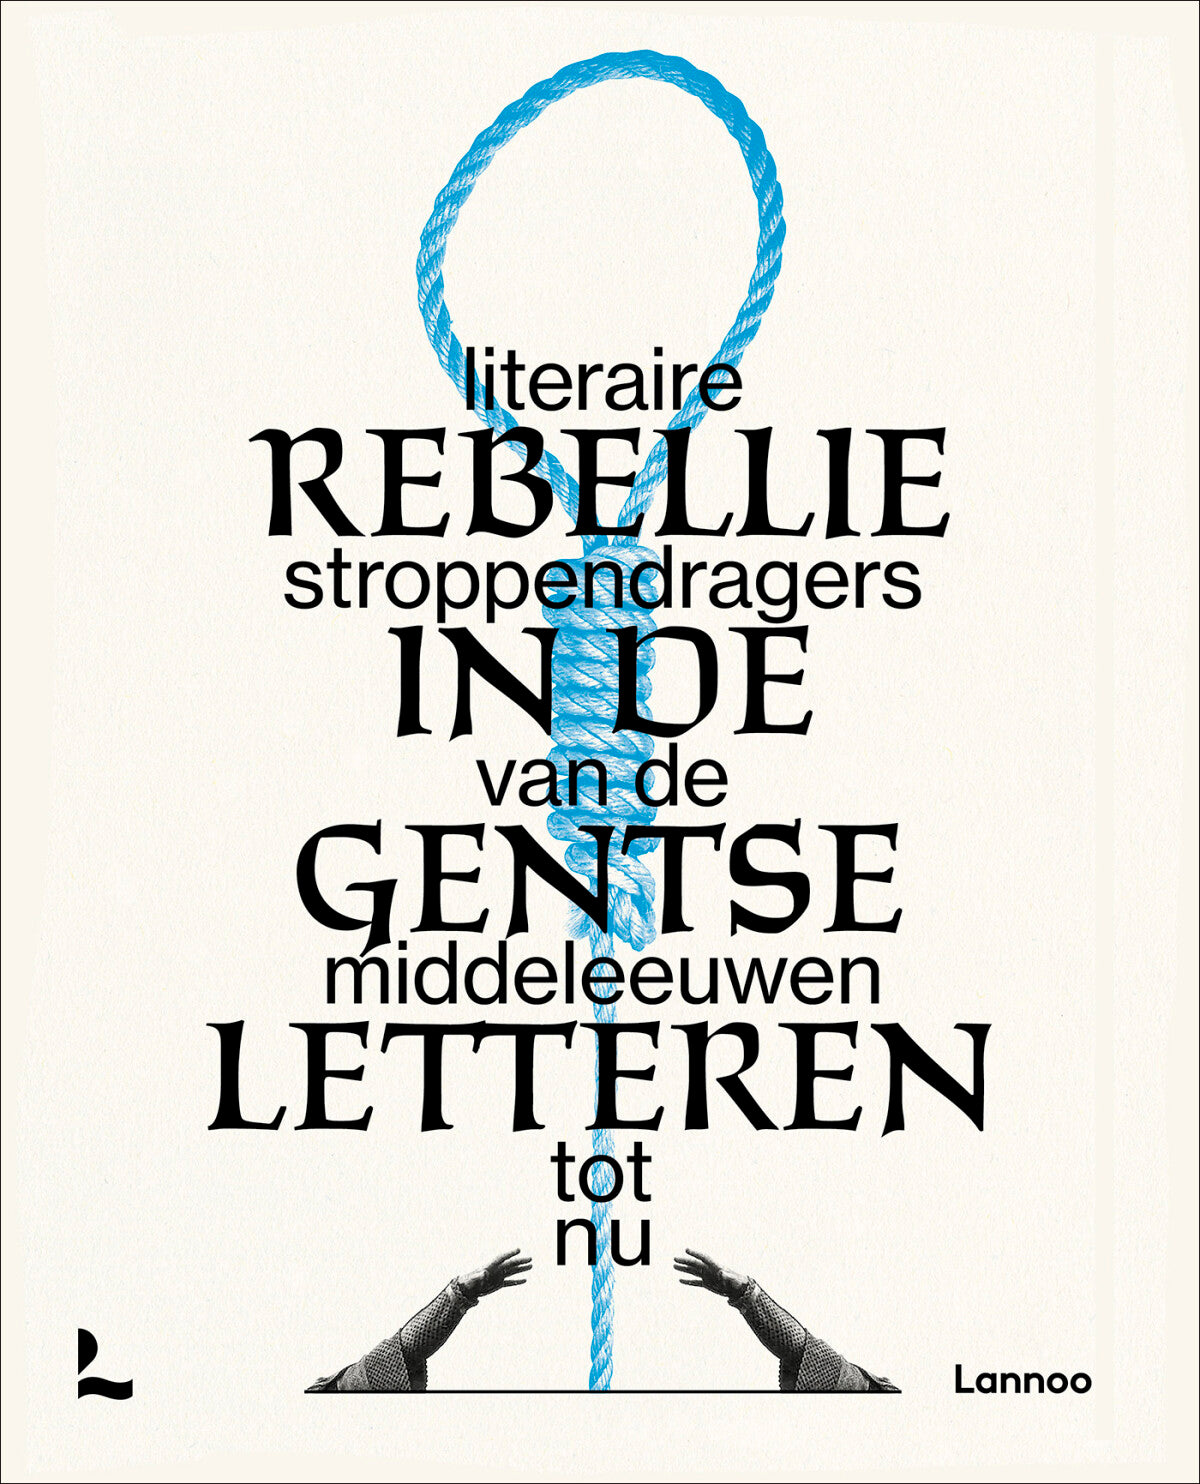 Rebellie in de Gentse letteren - literaire stroppendragers van de middeleeuwen tot nu